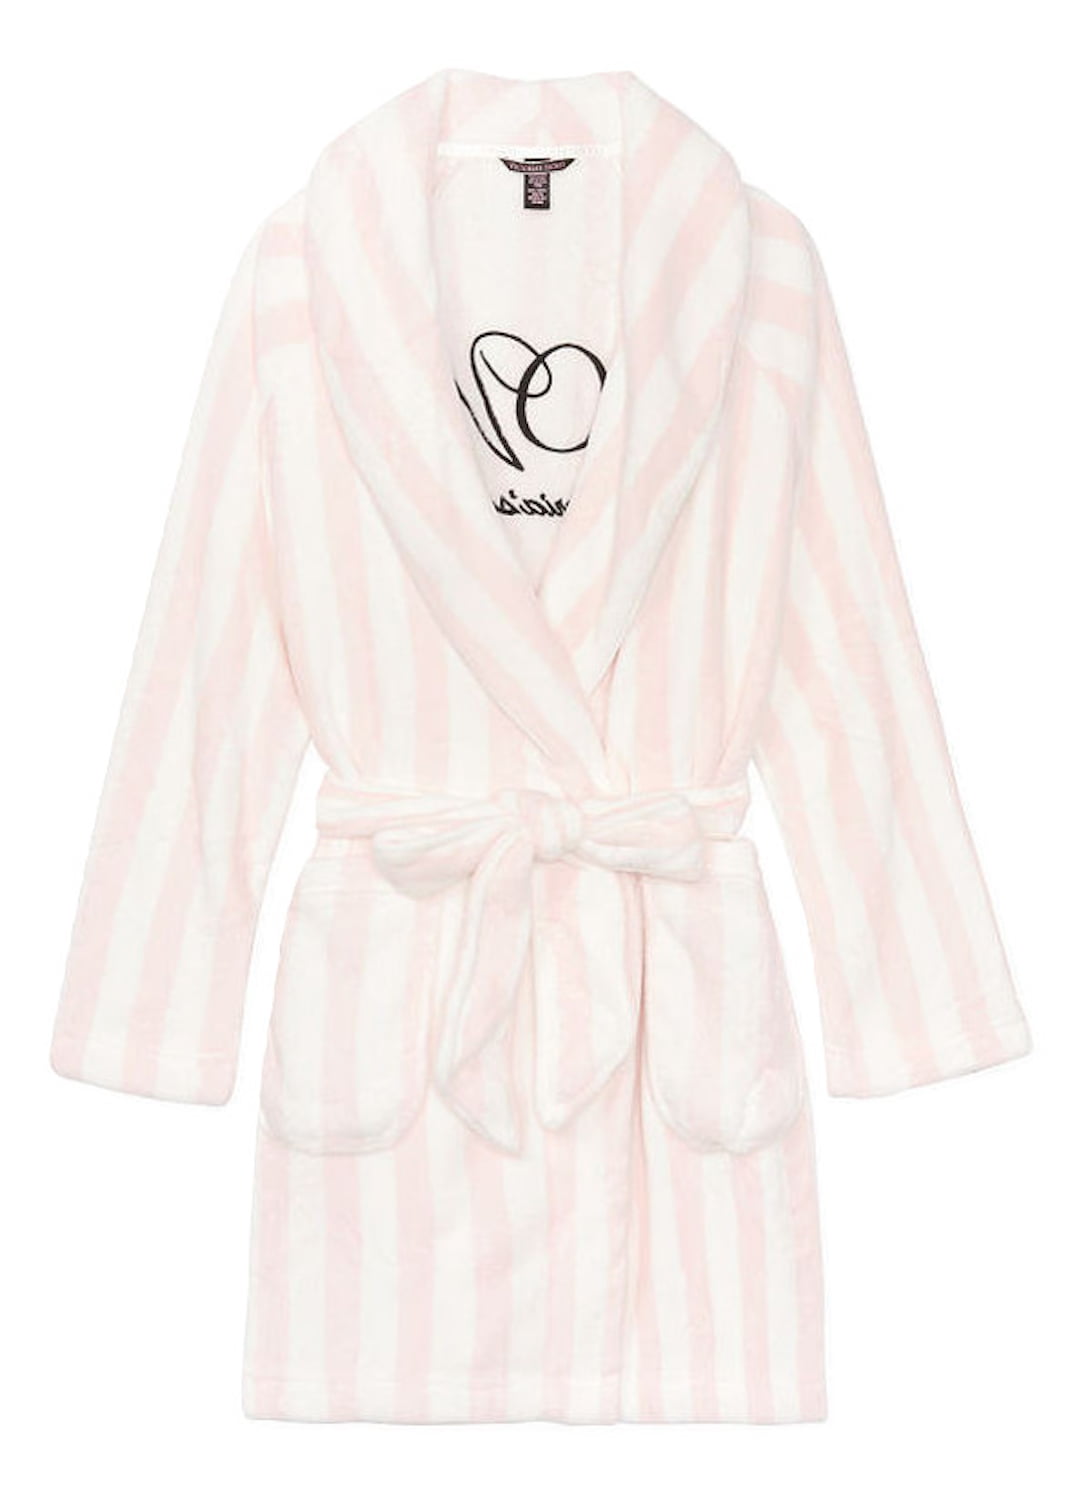 VICTORIA'S SECRET SOFT Plush The Cozy  Short Robe white pink logo Bathrobe M/L